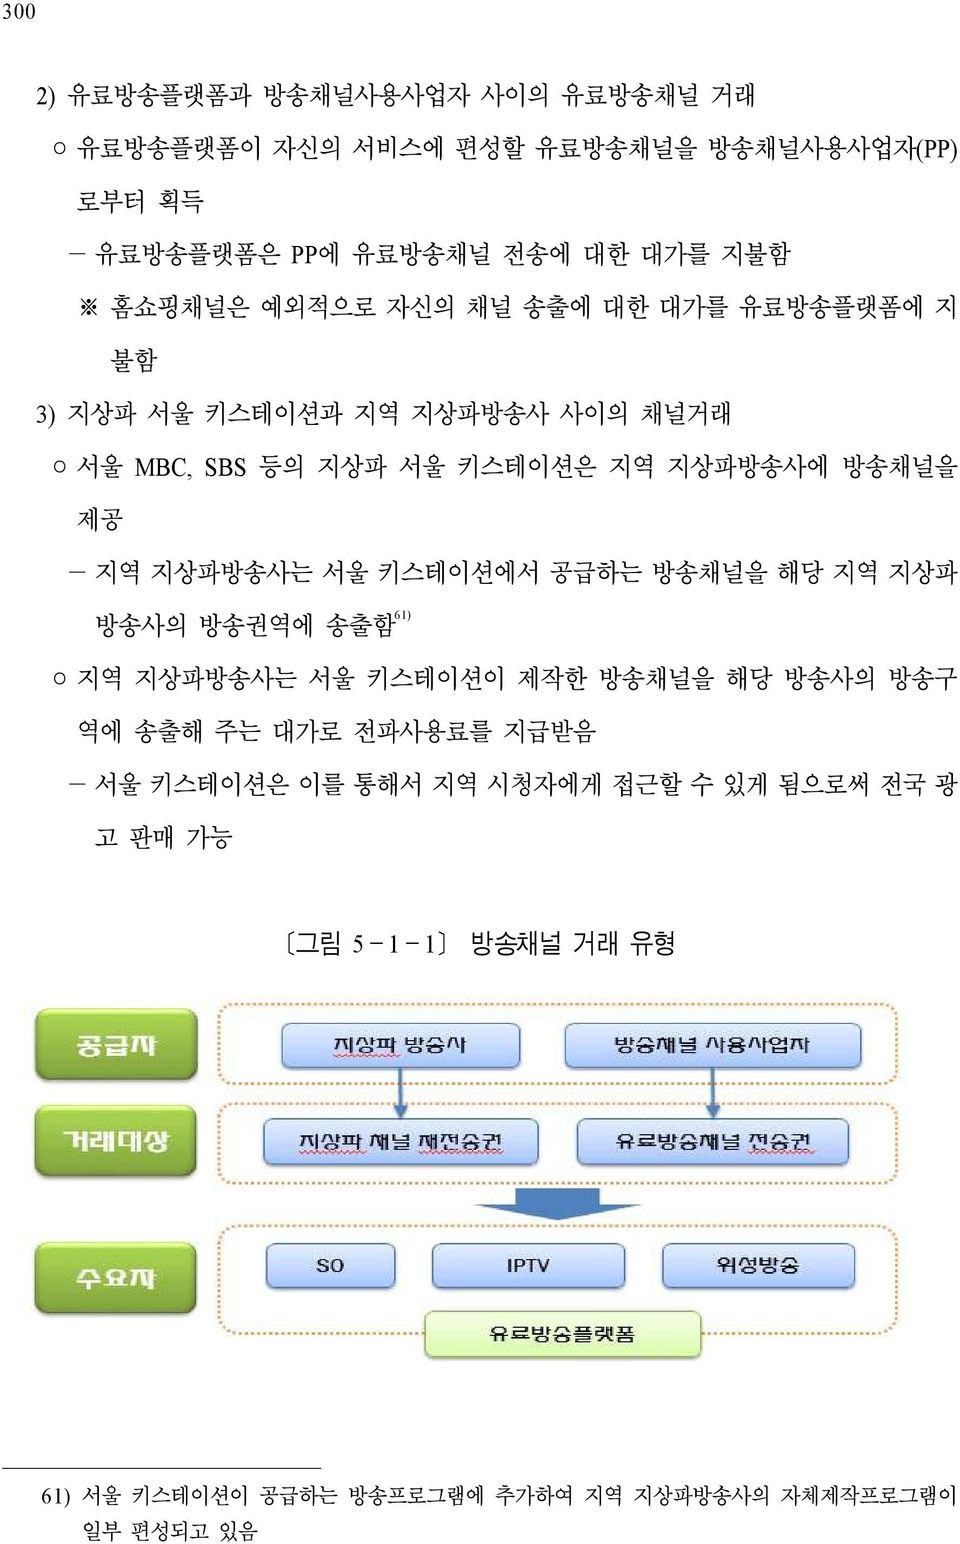 지역 지상파방송사는 서울 키스테이션에서 공급하는 방송채널을 해당 지역 지상파 방송사의 방송권역에 송출함 61) 지역 지상파방송사는 서울 키스테이션이 제작한 방송채널을 해당 방송사의 방송구 역에 송출해 주는 대가로 전파사용료를 지급받음 -